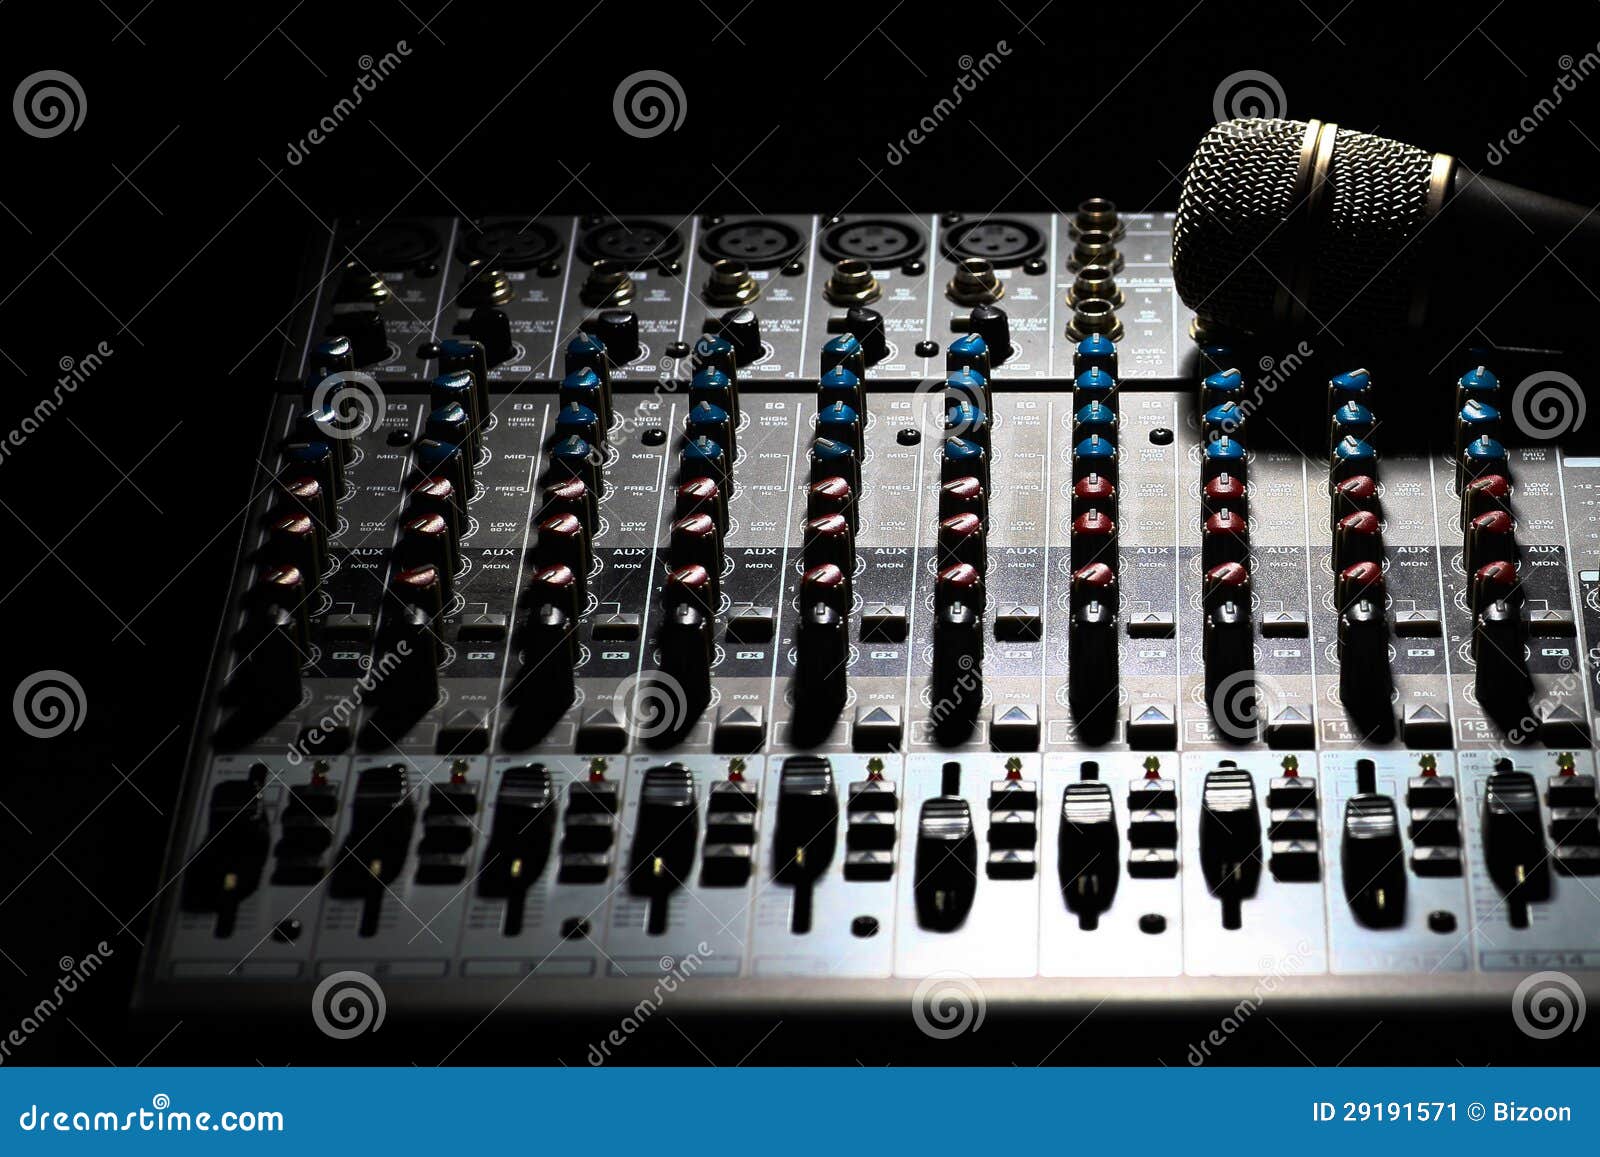 Music Mixer Desk